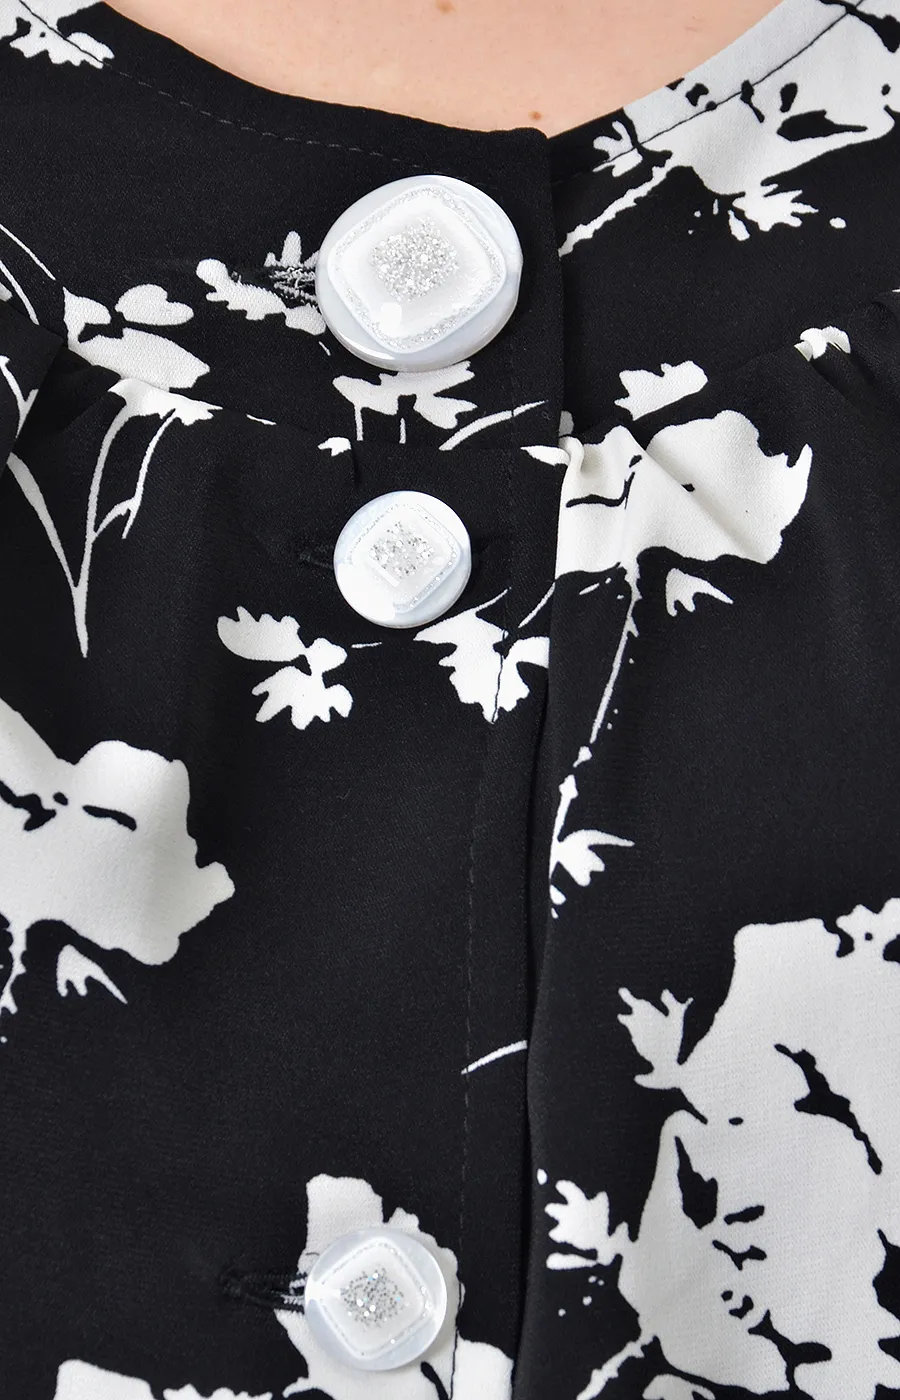 Блузка черная с цветочным рисунком большого размера